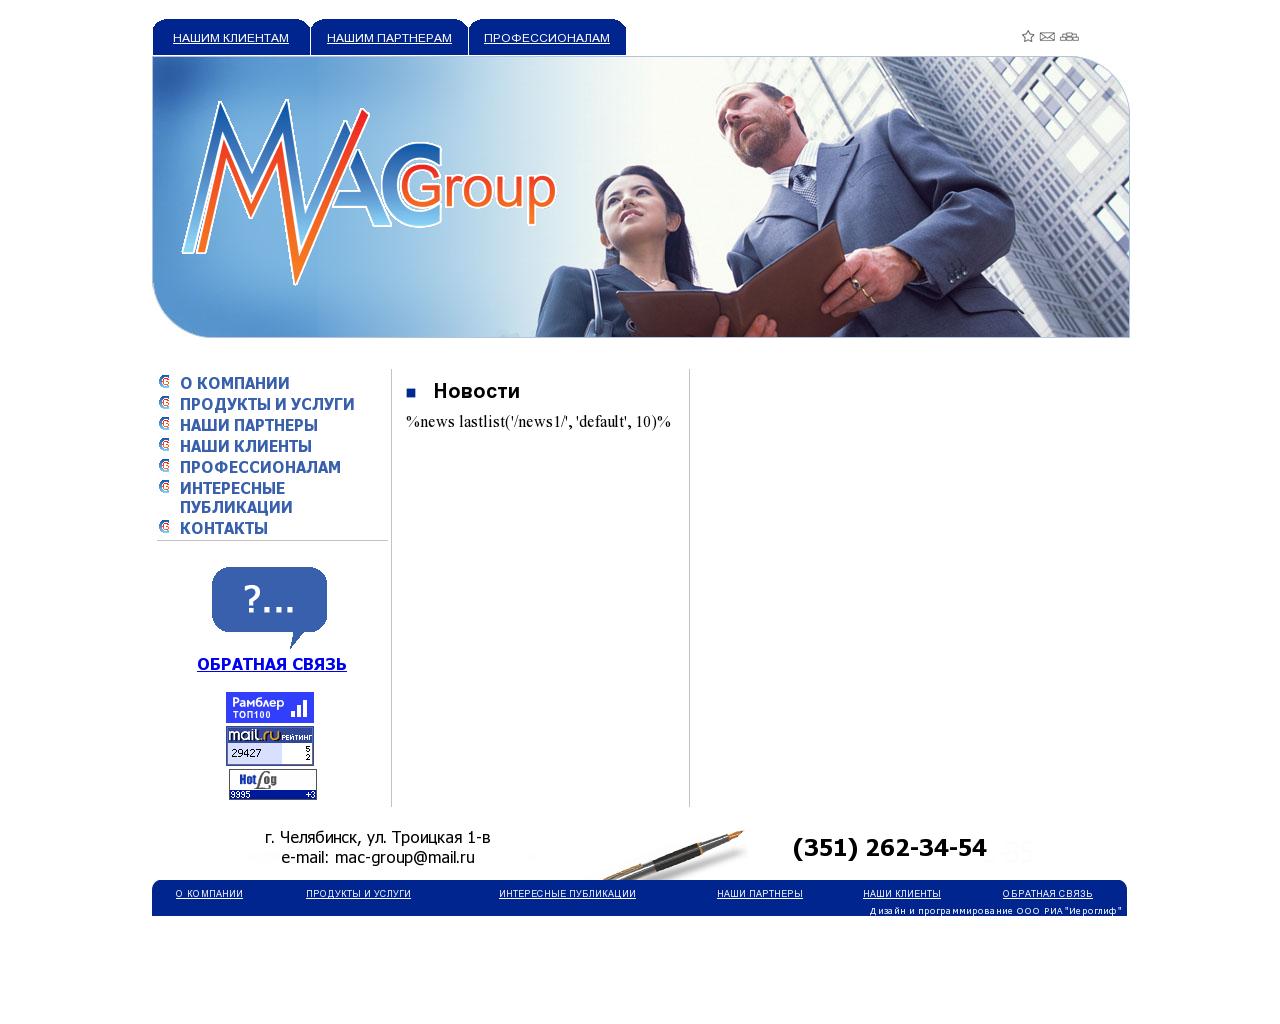 Изображение сайта macgroup.su в разрешении 1280x1024